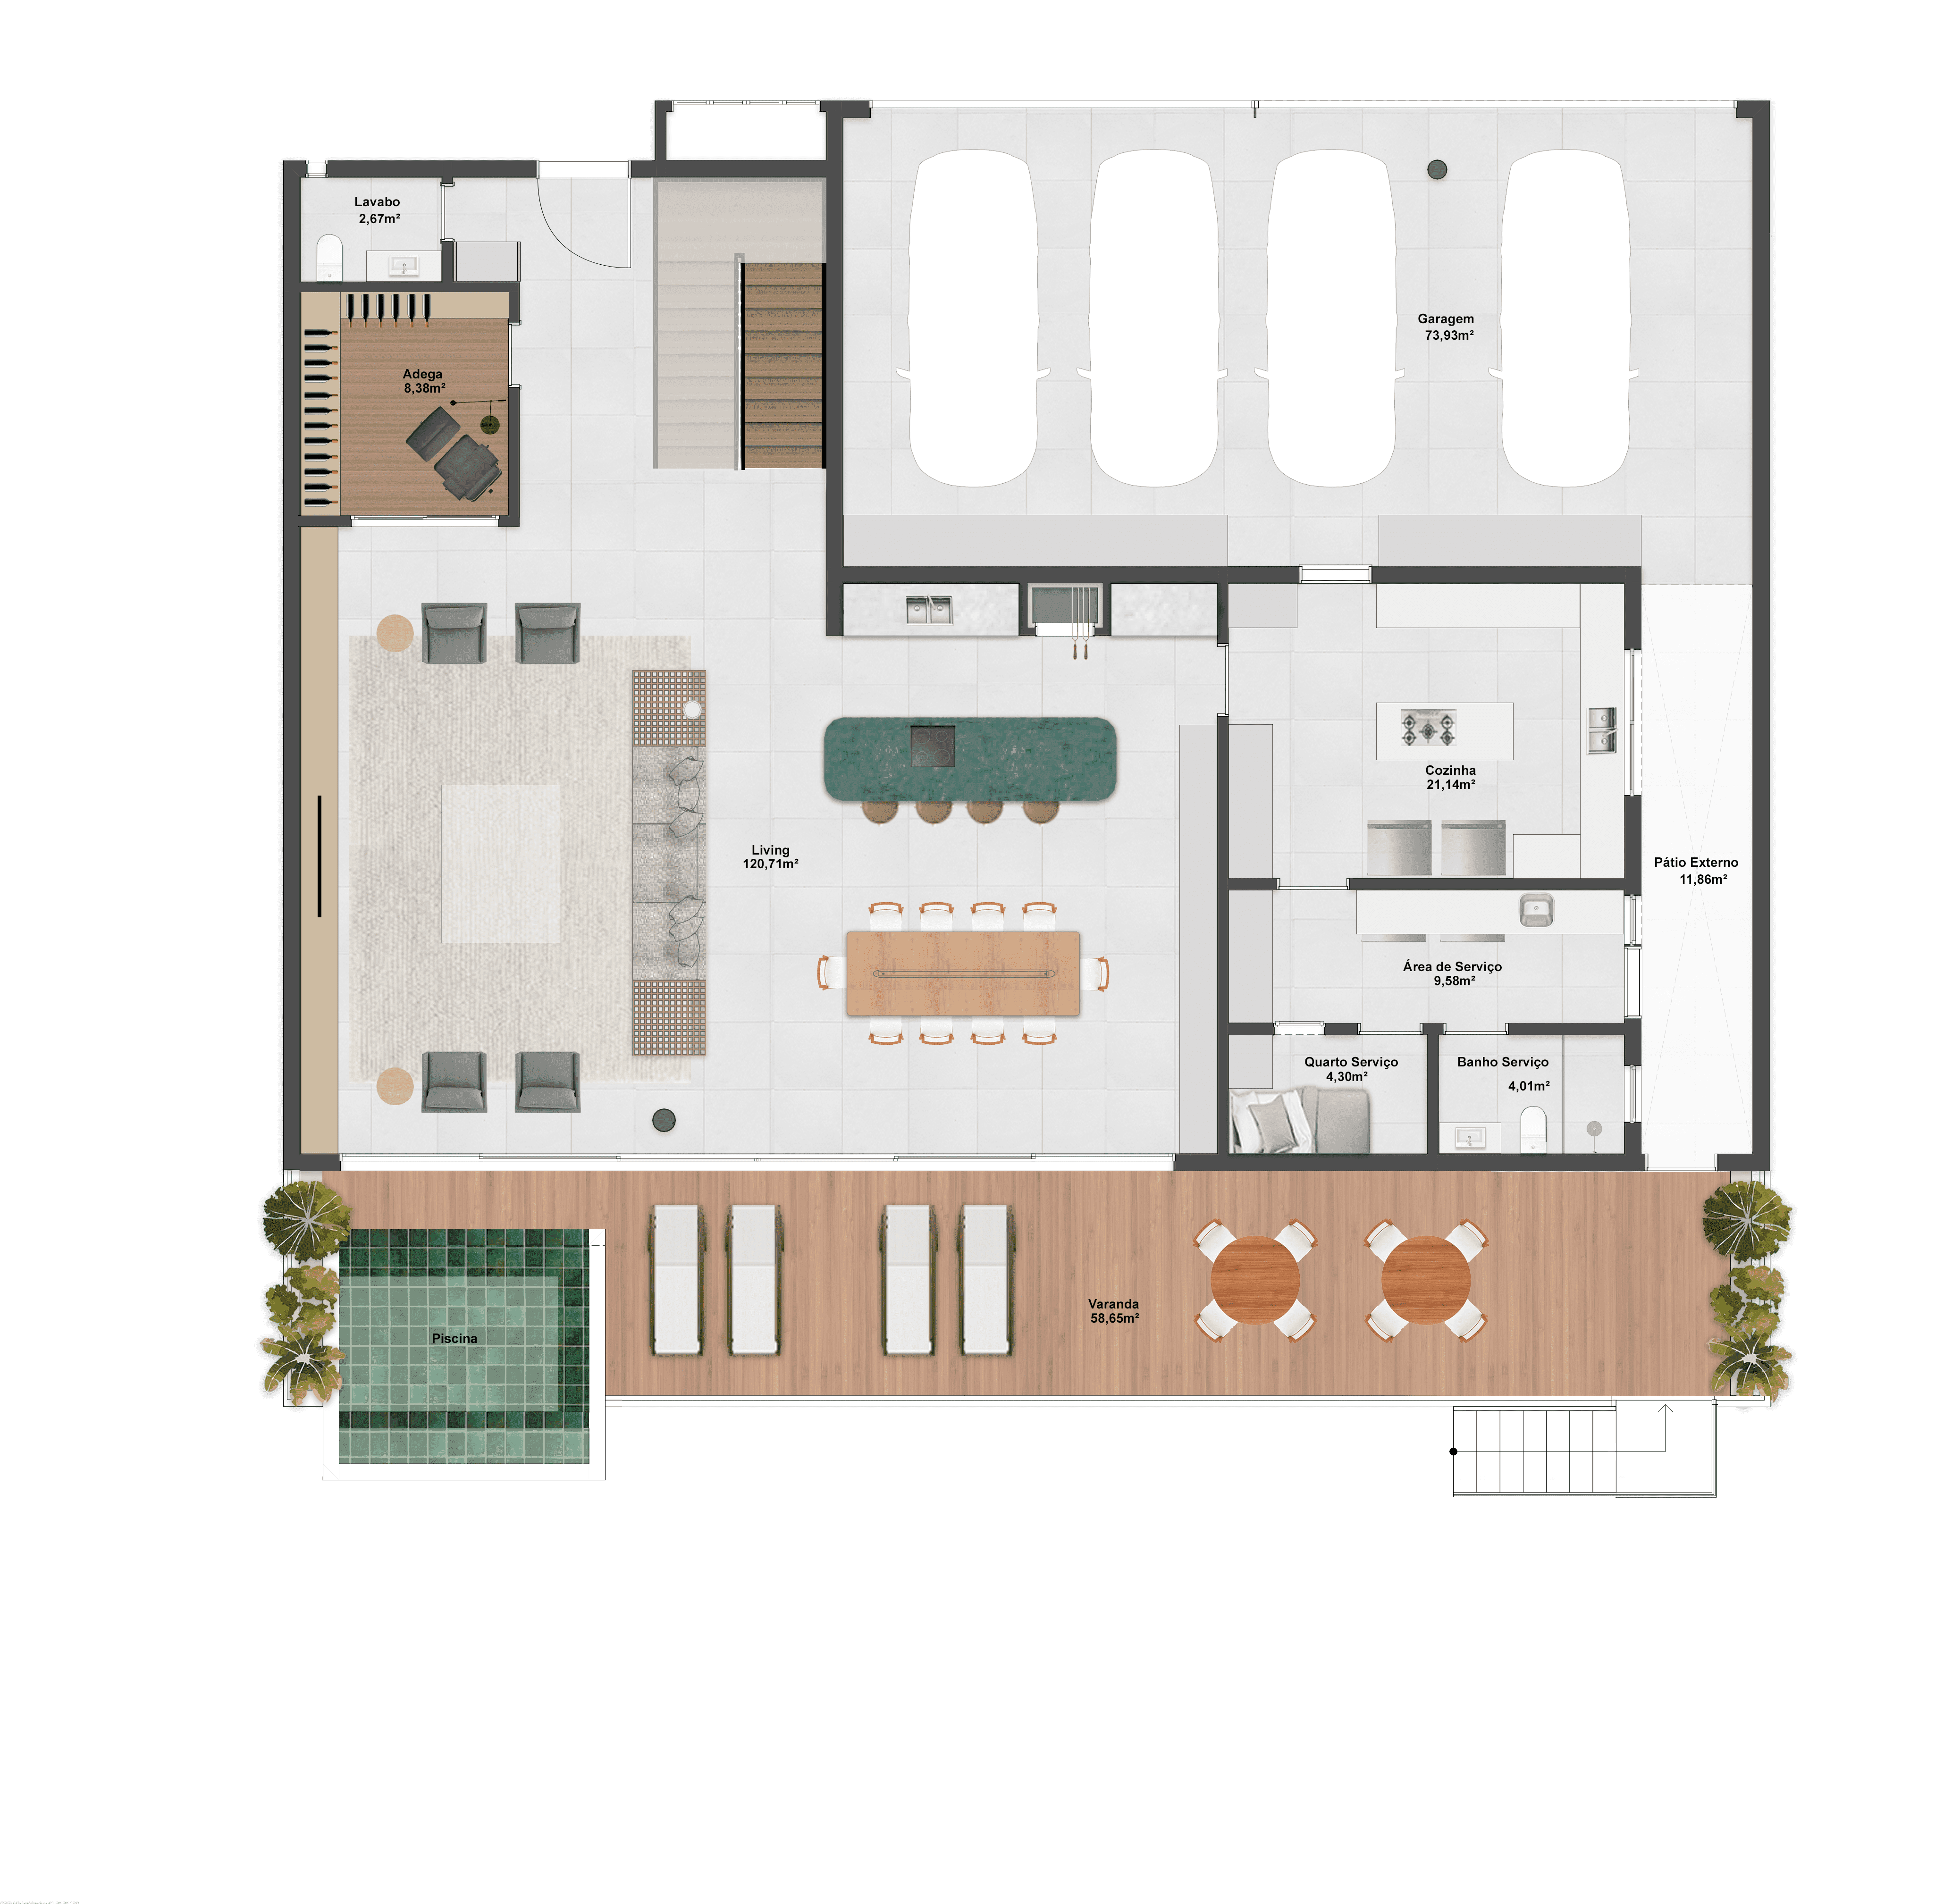 589,93m² | Opção 1 | Térreo | 4 Suítes + 1 Dormitório + Adega